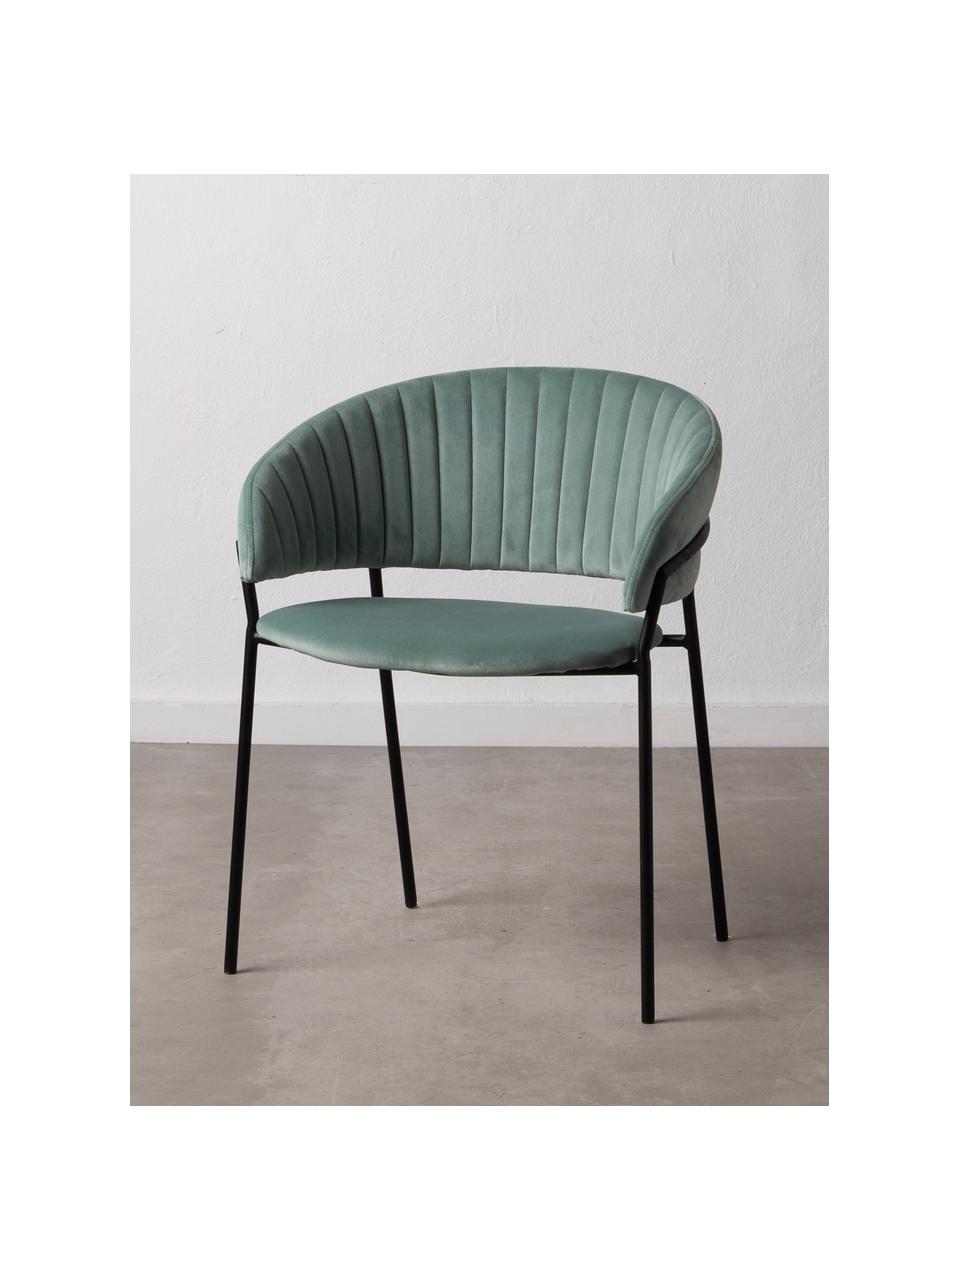 Krzesło tapicerowane z aksamitu Room, Tapicerka: 100% aksamit poliestrowy, Stelaż: metal powlekany, Miętowy, S 53 x G 58 cm